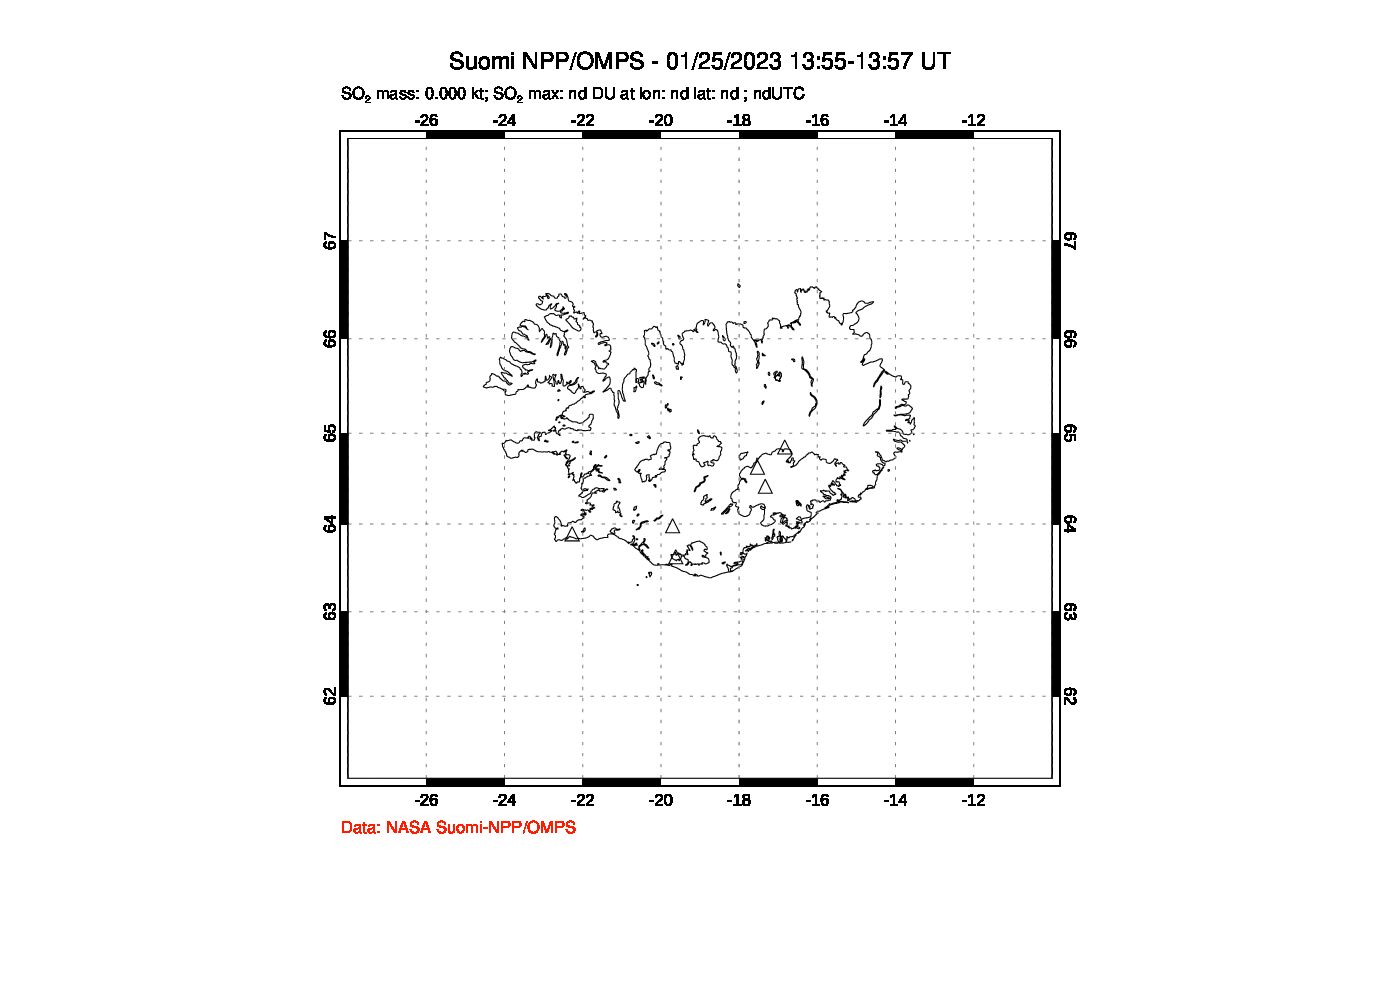 A sulfur dioxide image over Iceland on Jan 25, 2023.